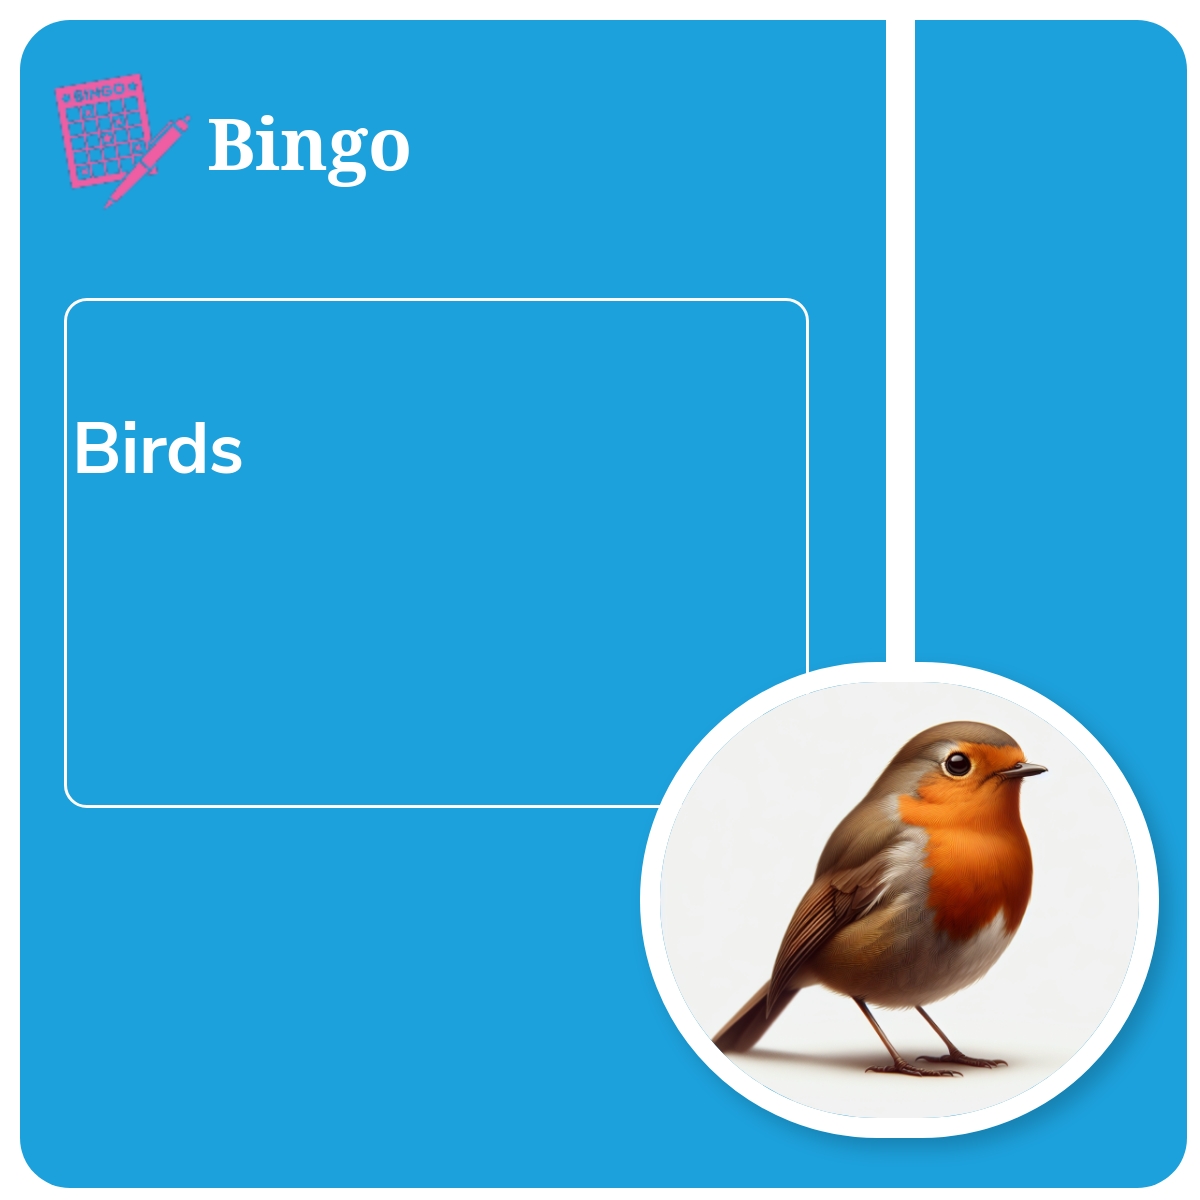 Bingo: Birds